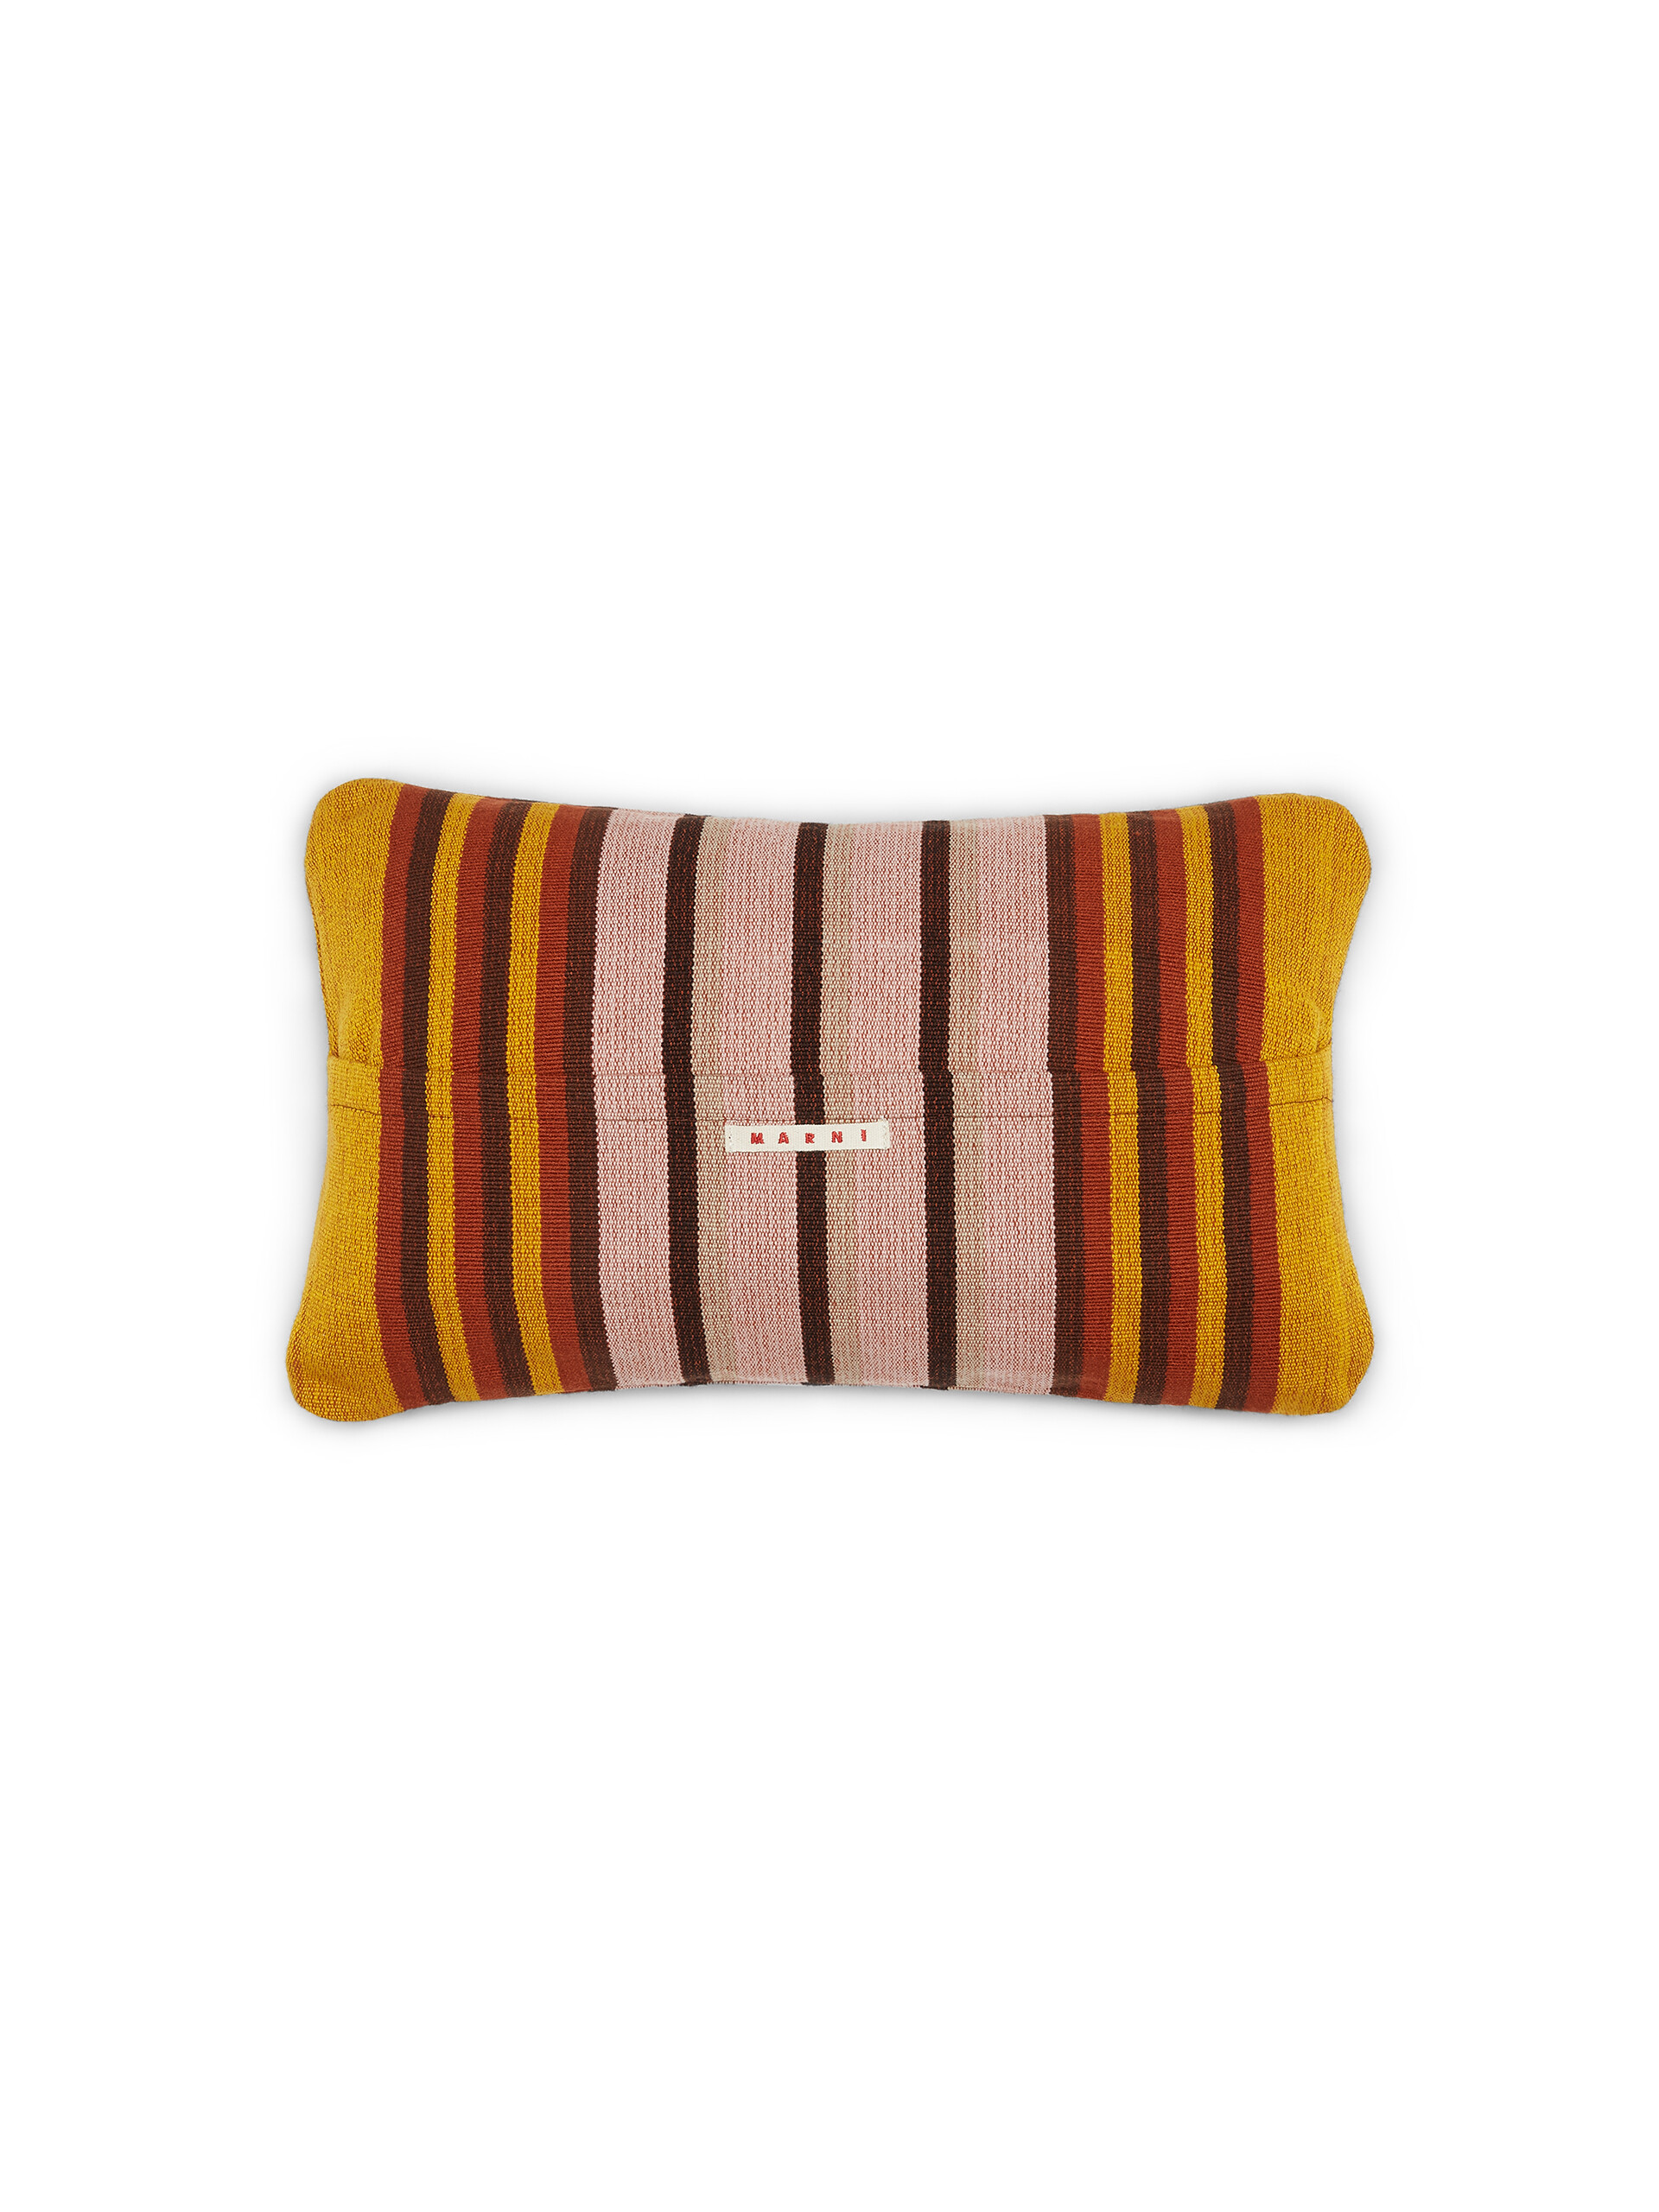 Fodera per cuscino rettangolare MARNI MARKET in poliestere giallo rosa e marrone - Arredamento - Image 2